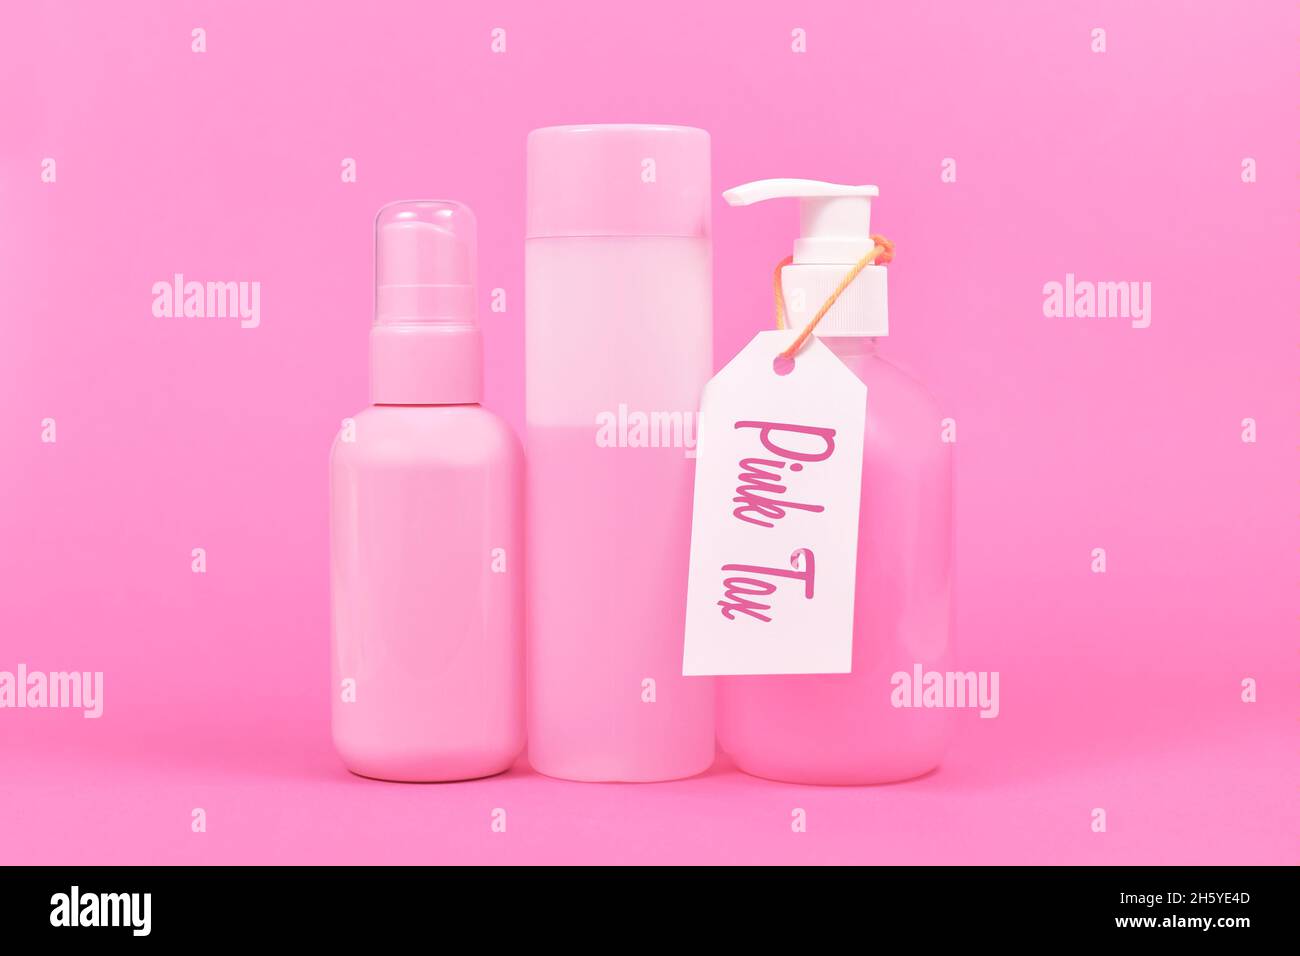 Concetto di tassa rosa con vari prodotti per l'igiene di colore rosa stereotipo commercializzati alle donne Foto Stock